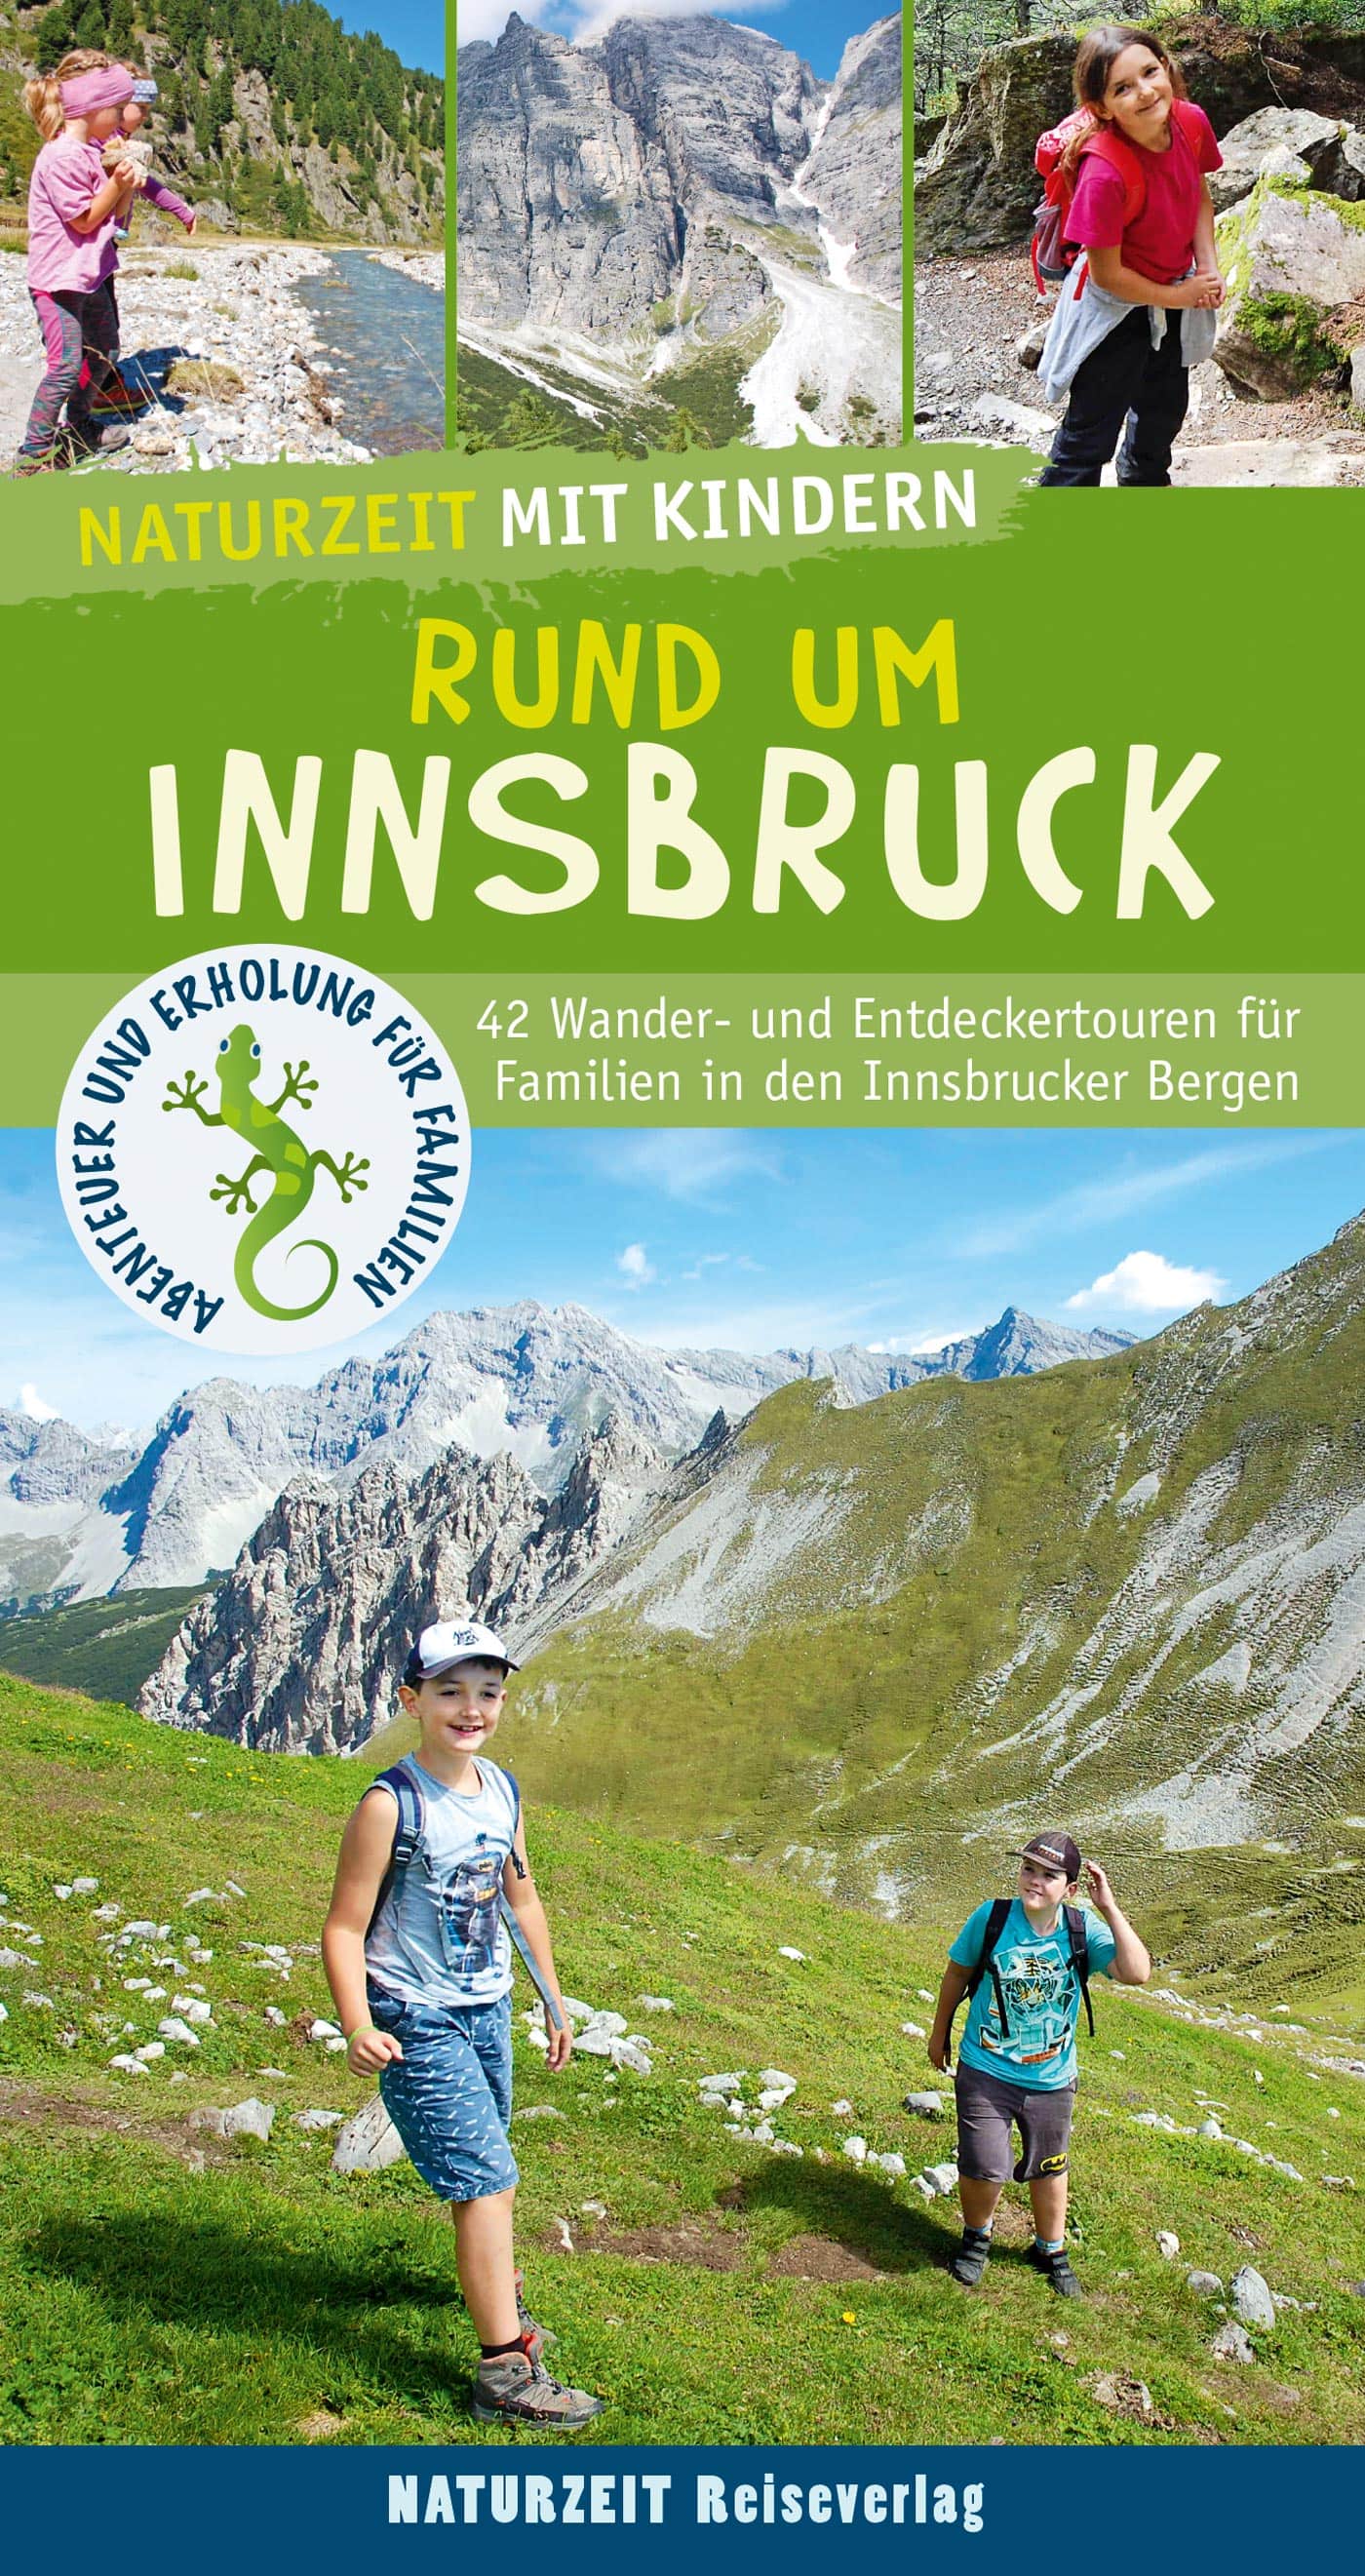 Naturzeit-Familienreiseführer: Wandern mit Kindern rund um Innsbruck // HIMBEER